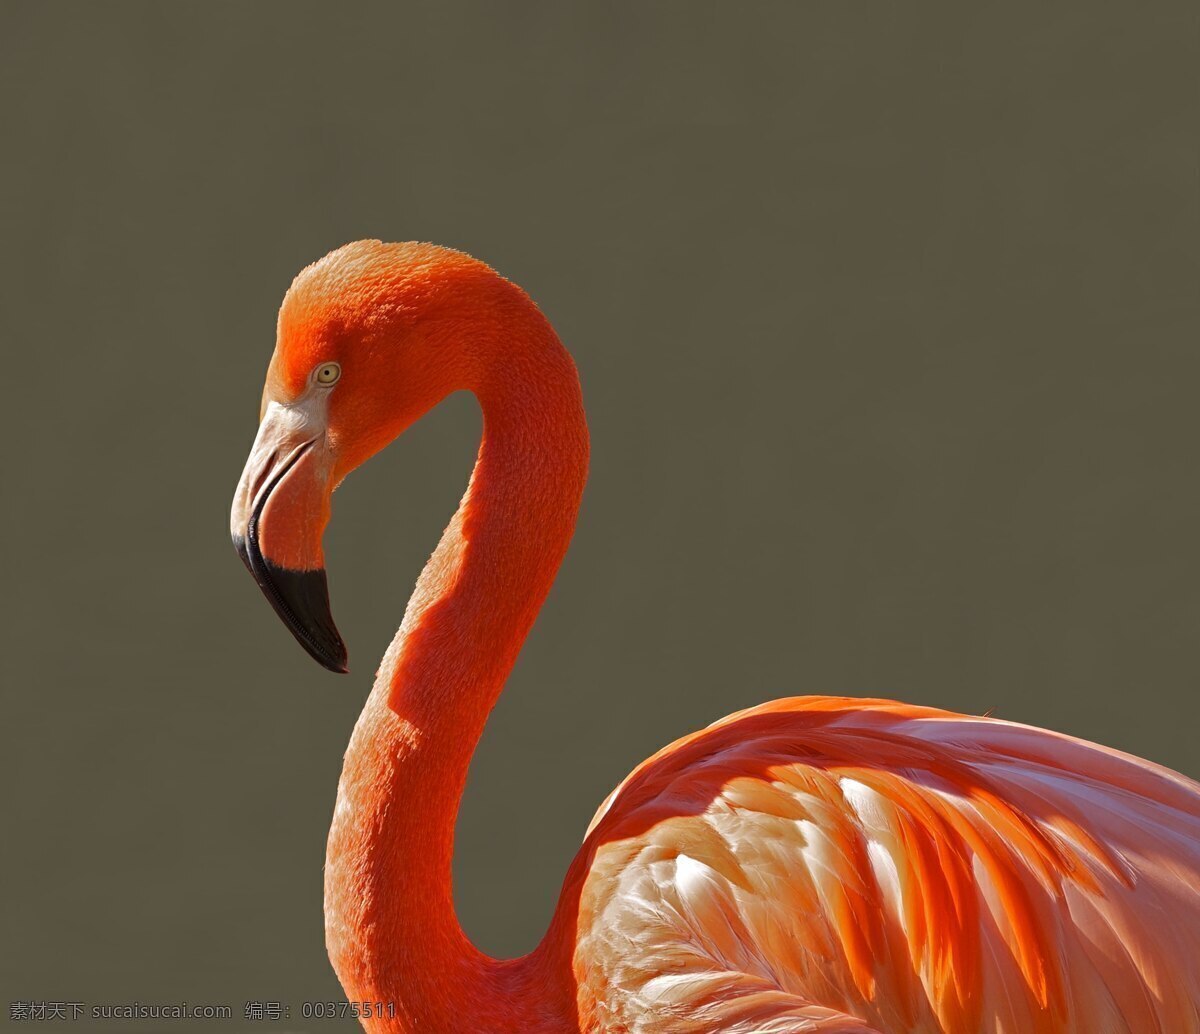 火烈鸟 鸟 热带 颜色 动物 特写 橙色 多彩 生物世界 鸟类